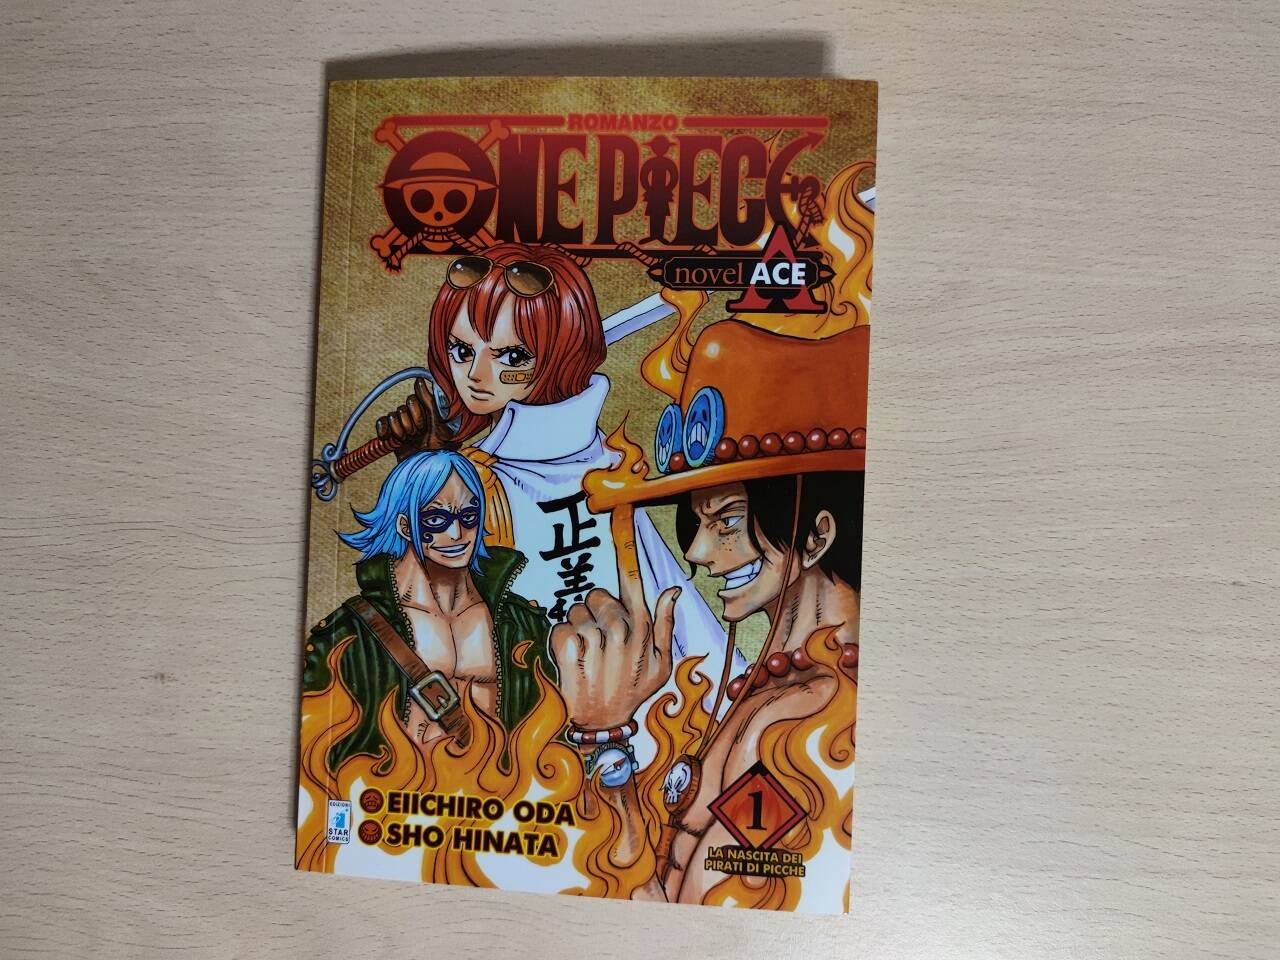 Immagine di One Piece Novel Ace Vol.1, la recensione: la serie spin-off su Portuguese D. Ace